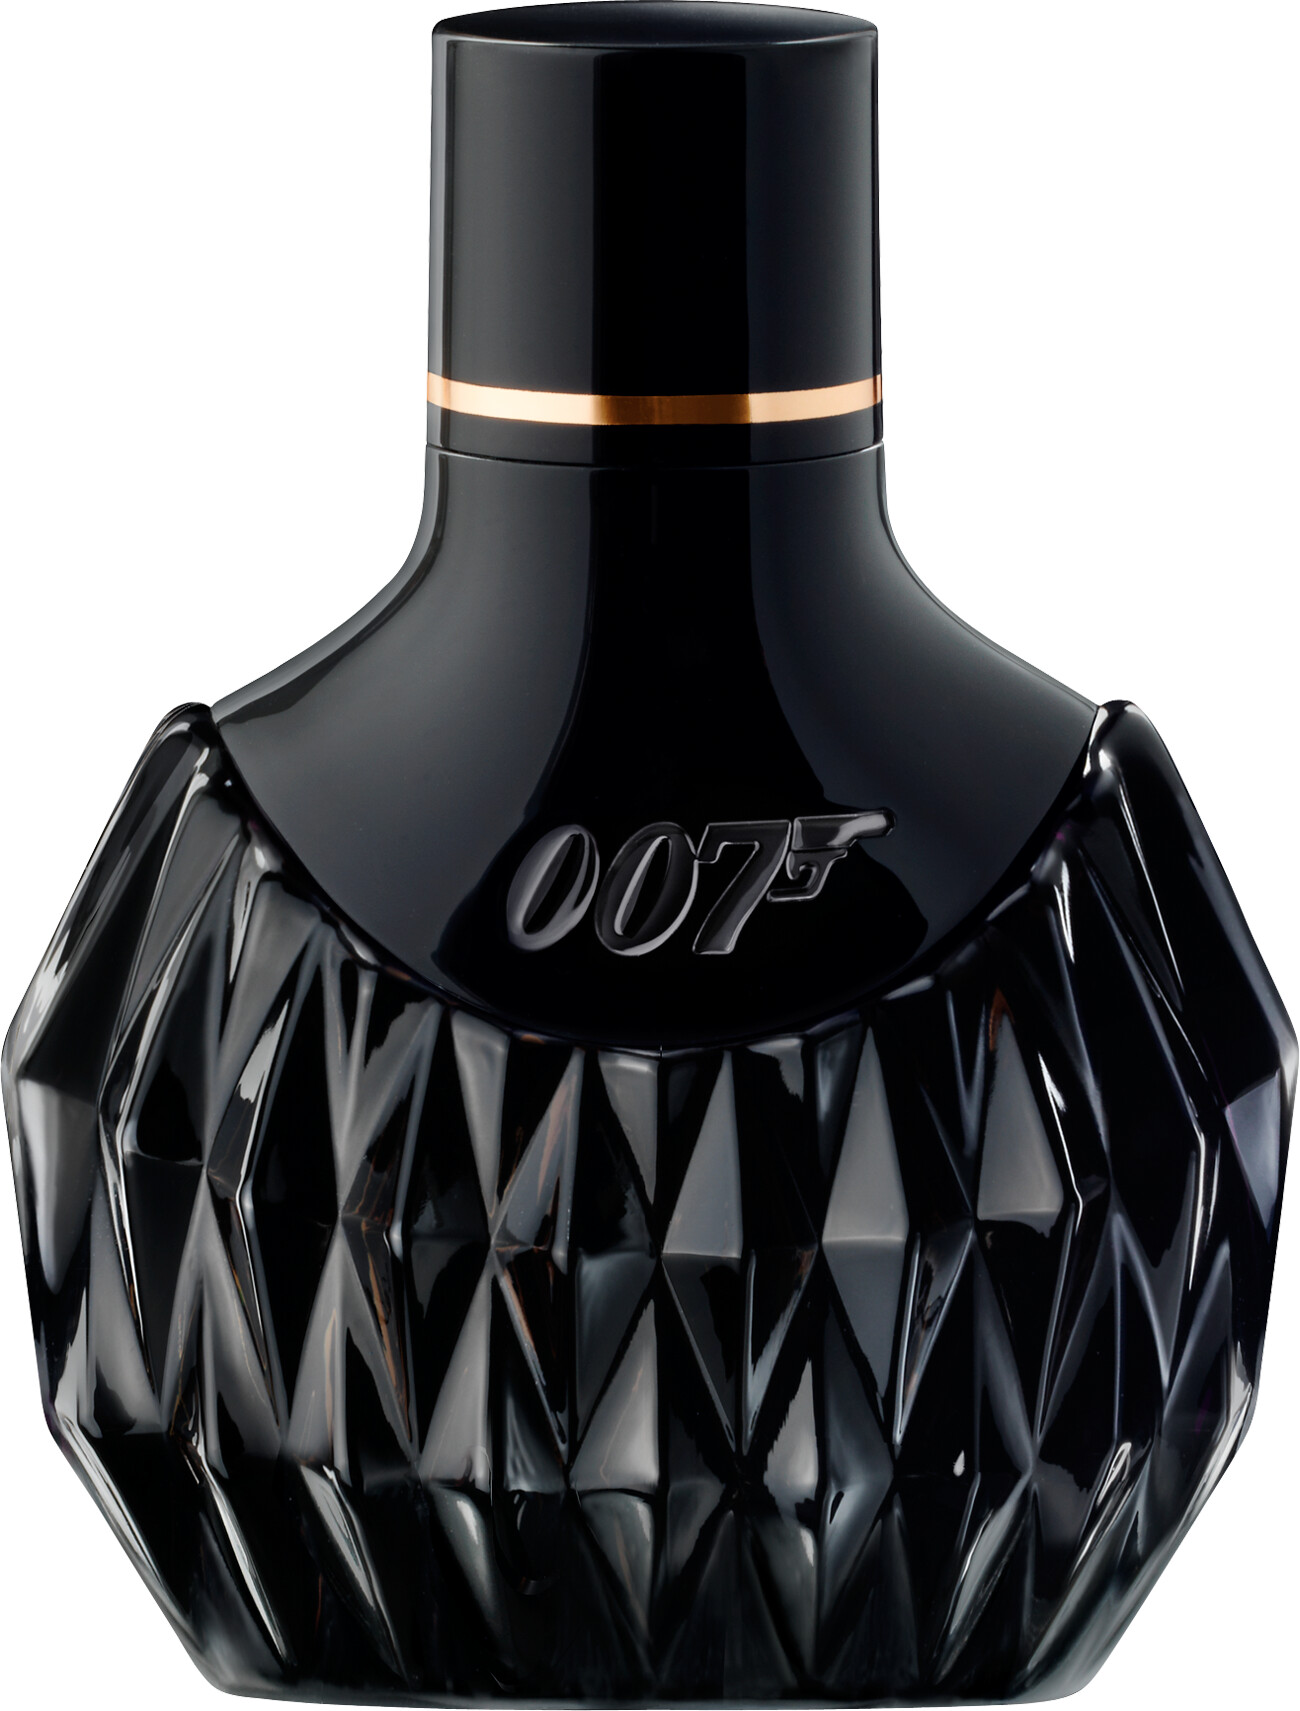 007 Fragrances For Women